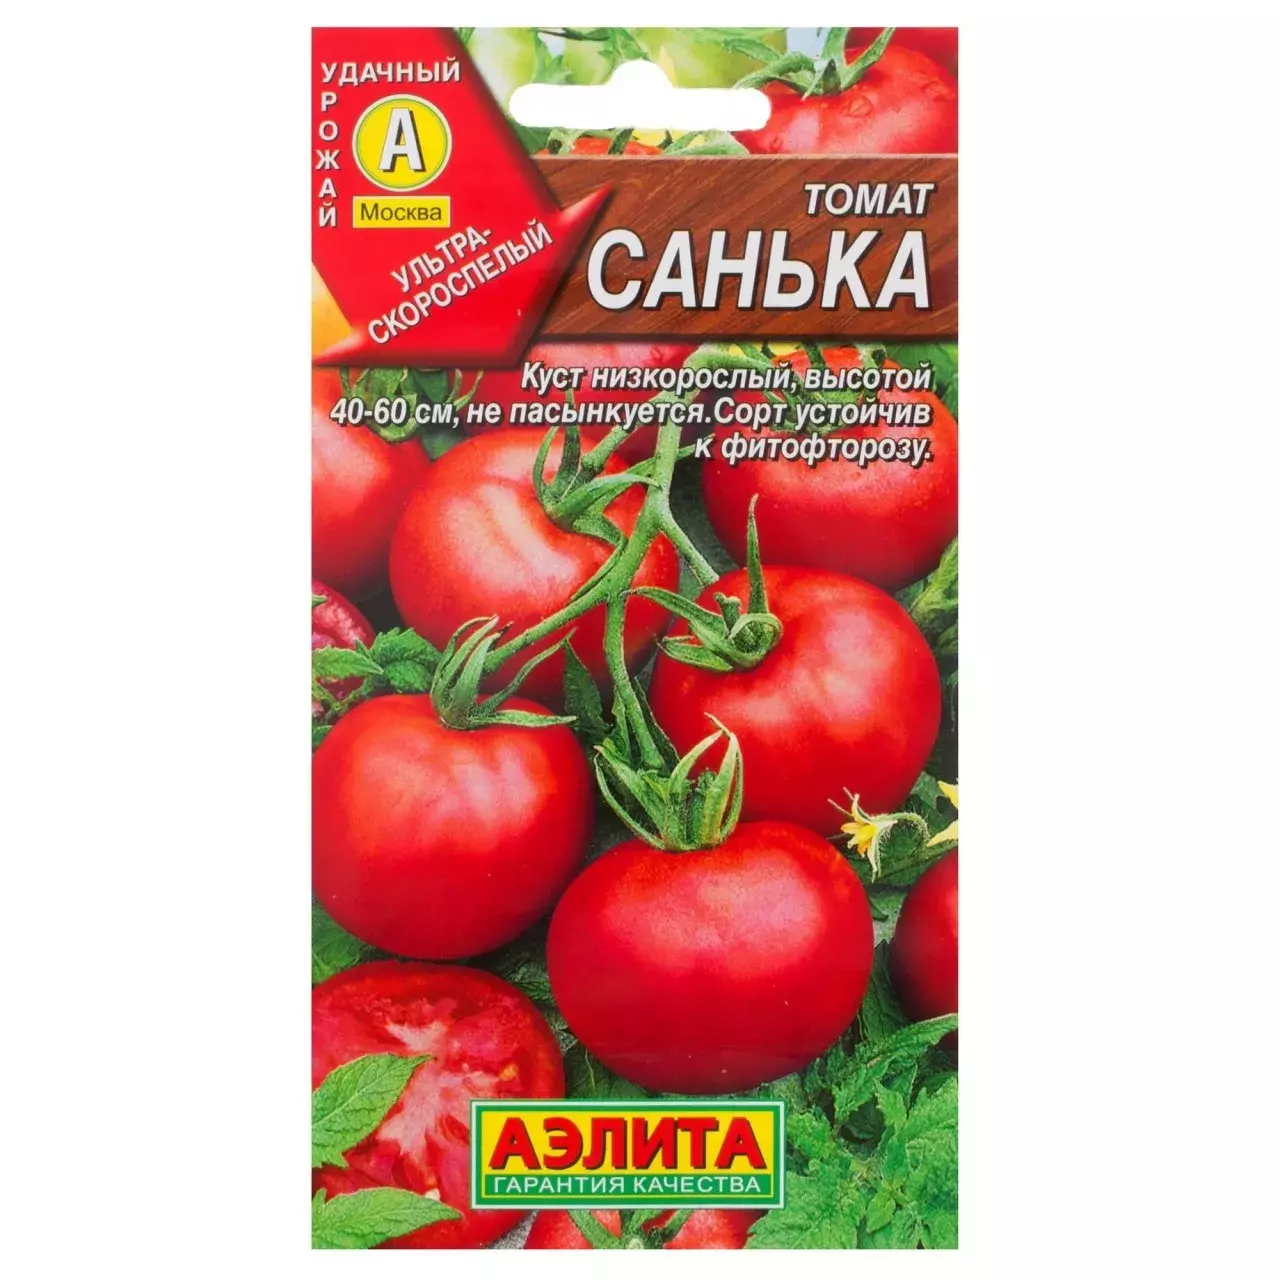 Способы использования томатов Санька 2023